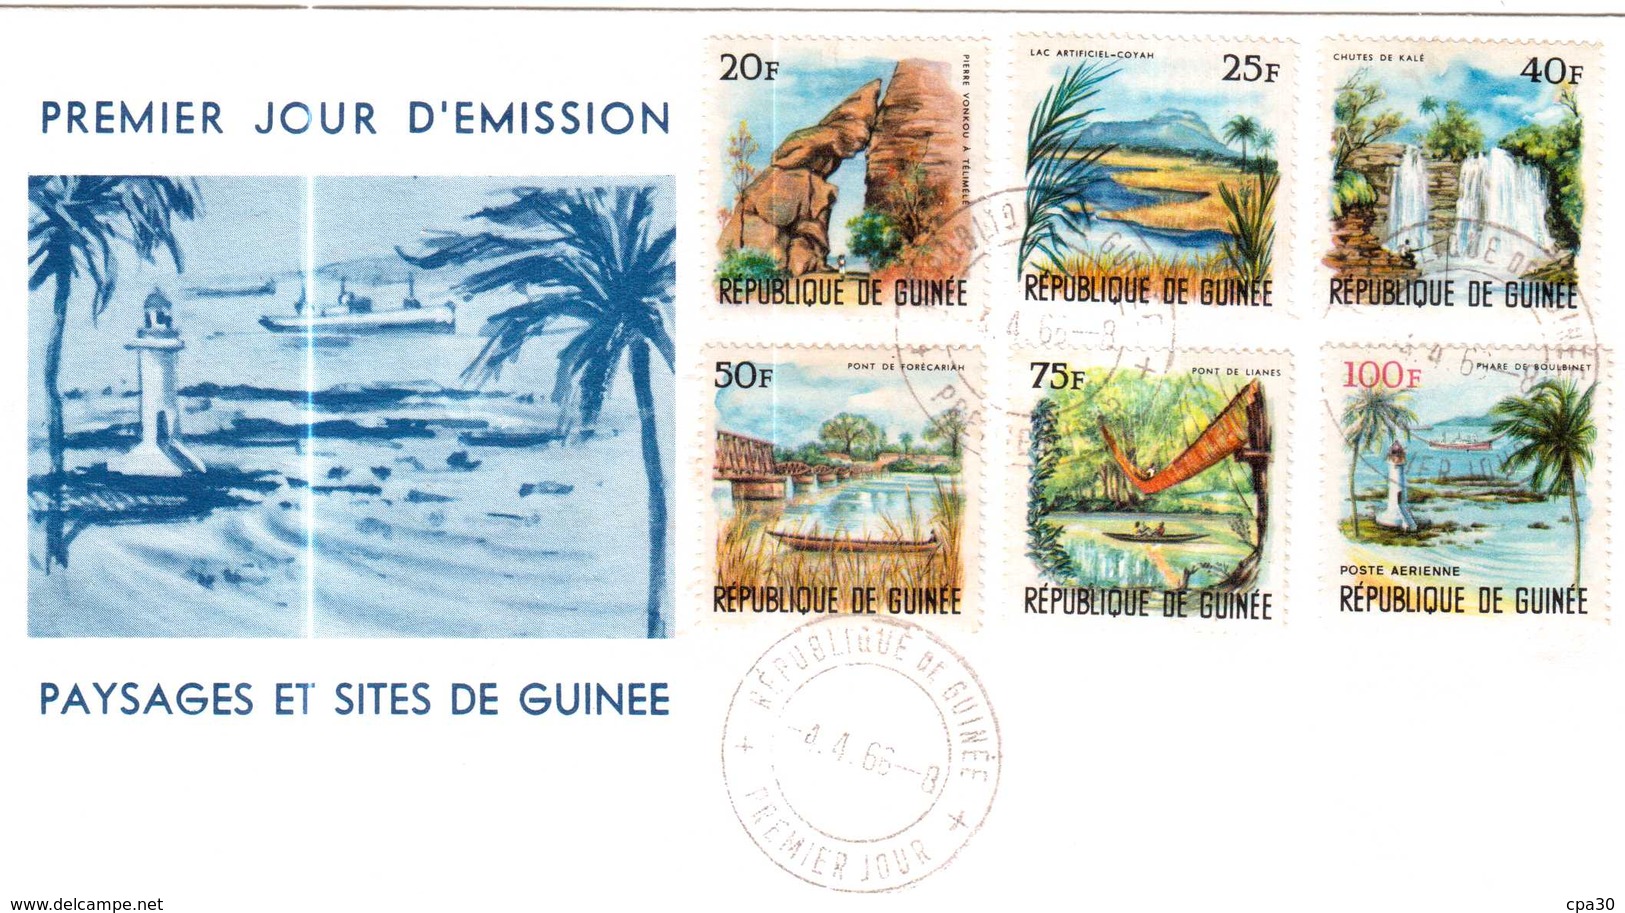 ENVELOPPE PREMIER JOUR D'EMISSION PAYSAGES ET SITES DE GUINEE 1966 - Guinea (1958-...)